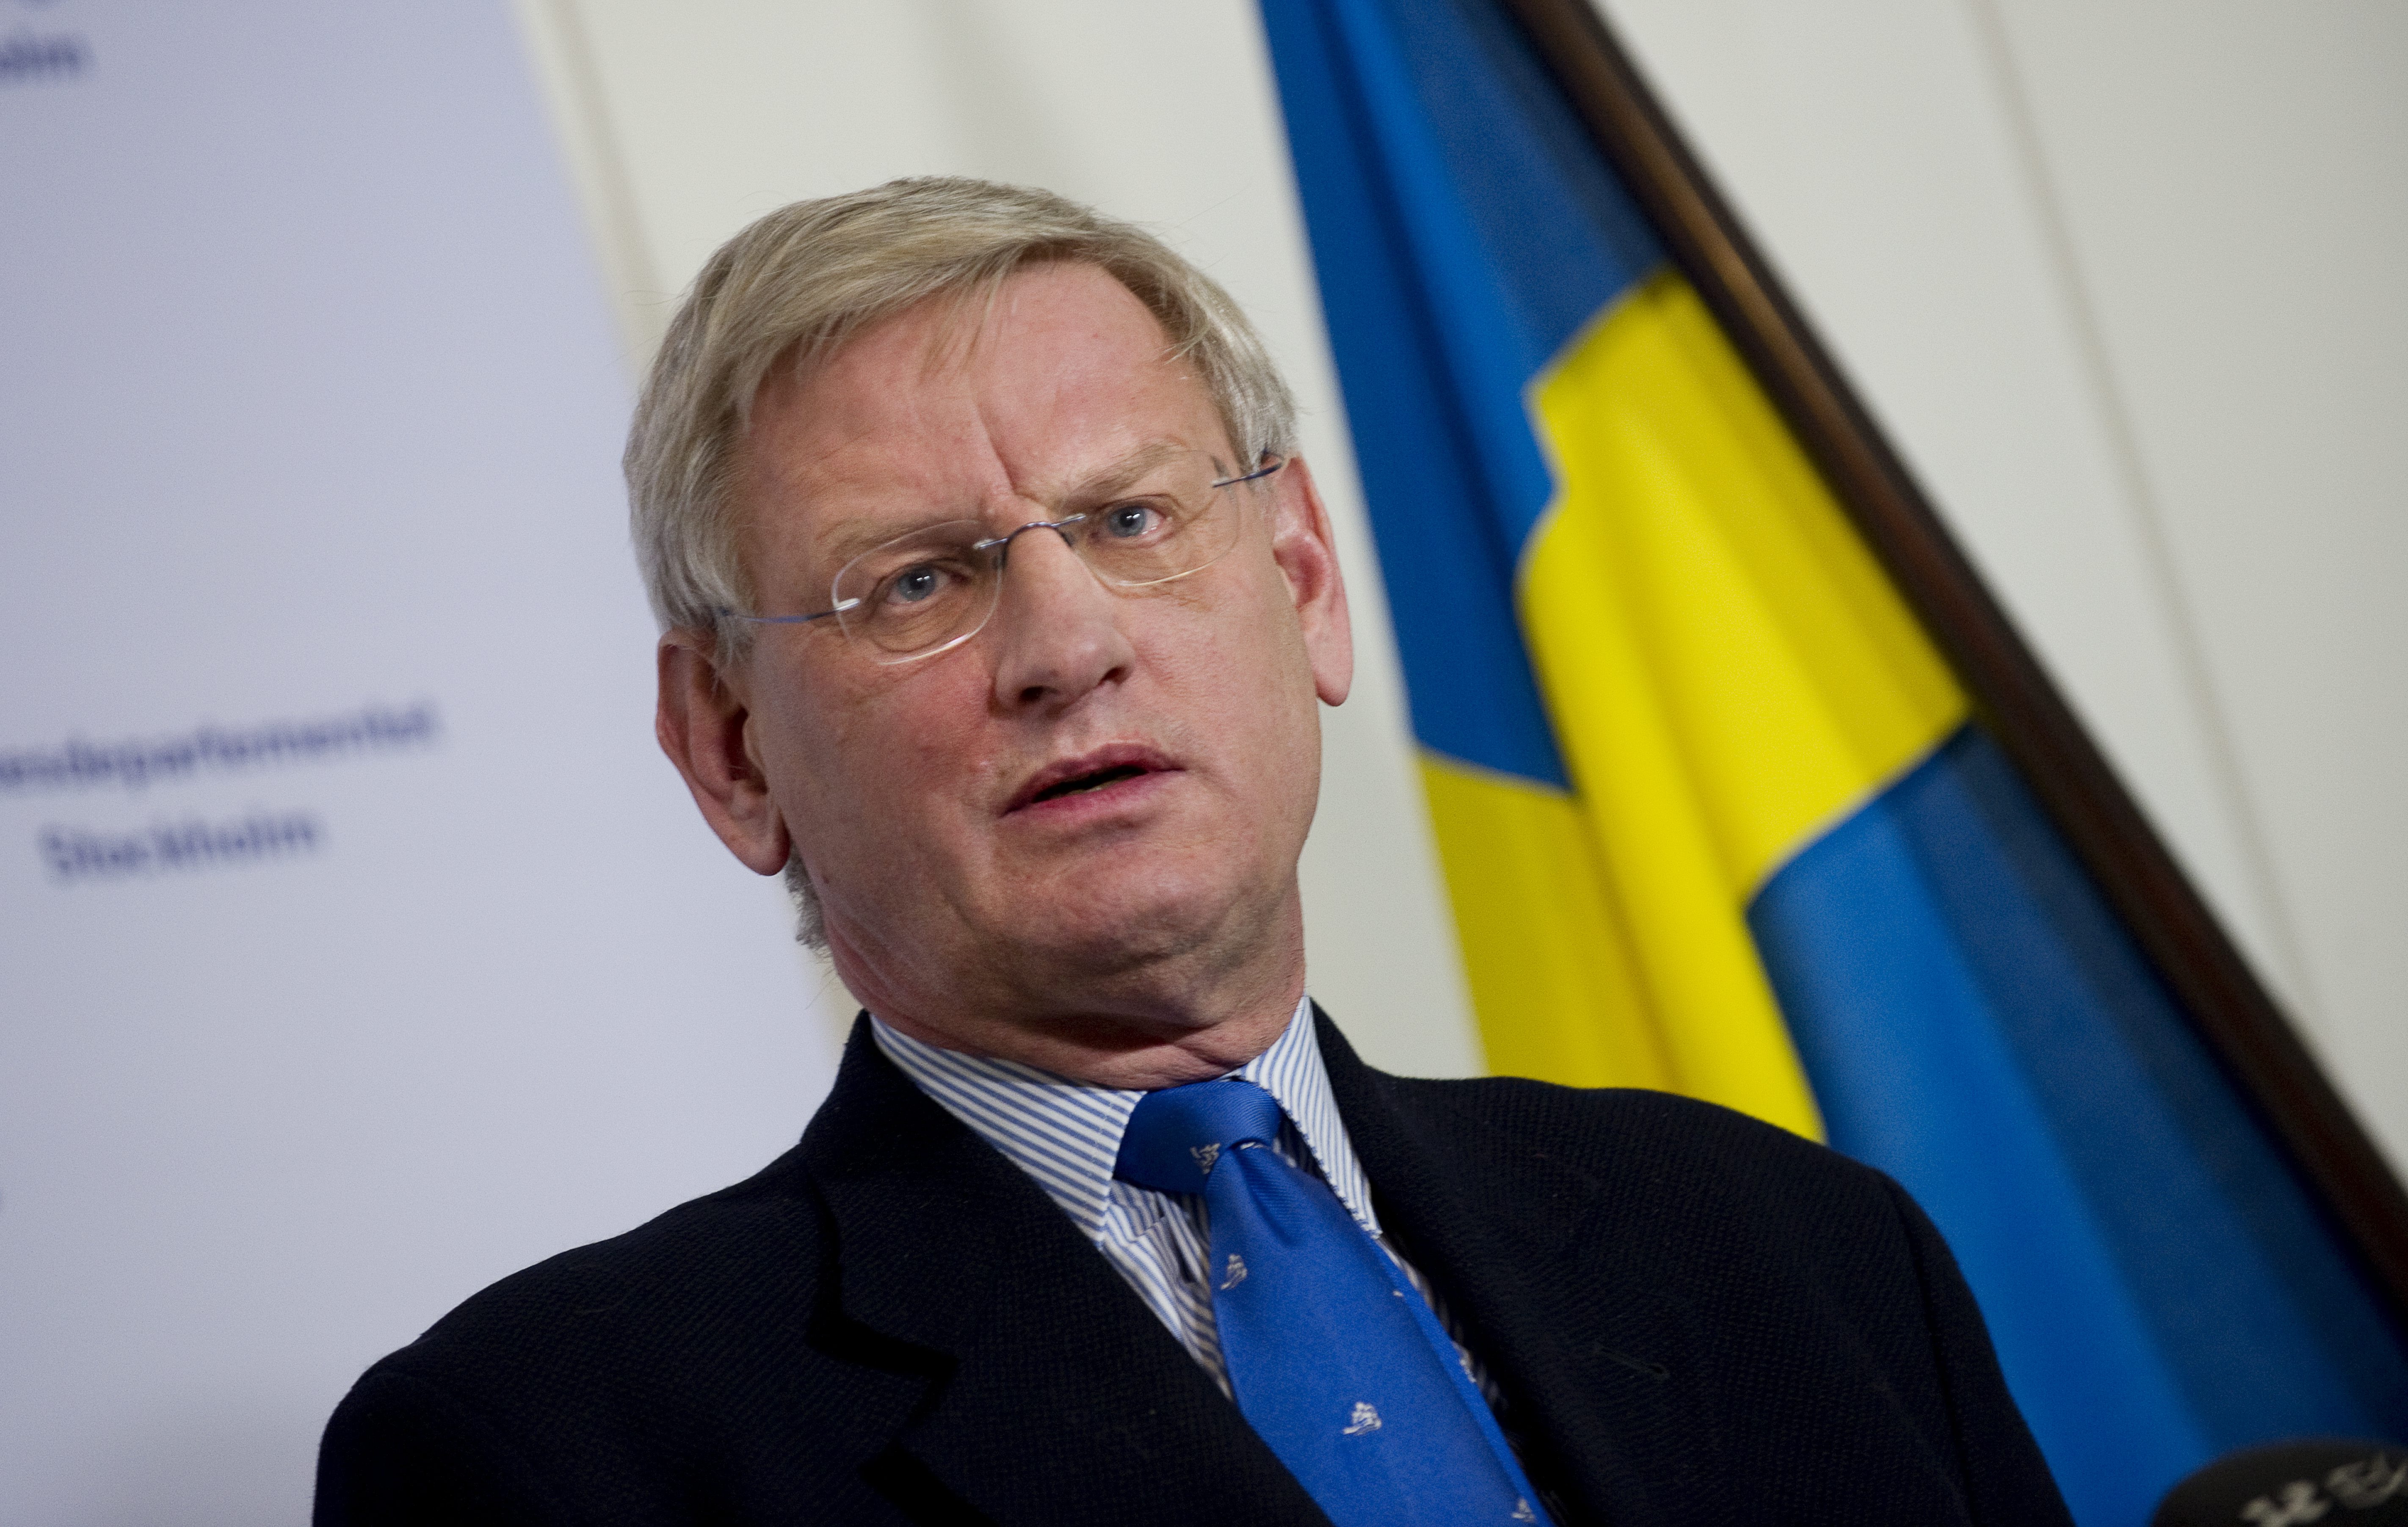 Carl Bildt var på World Economic Forum i Davos - liksom Etiopiens premiärminister Meles Zenawi. Men några samtal om Martin Schibbye och Johan Persson blev det inte.